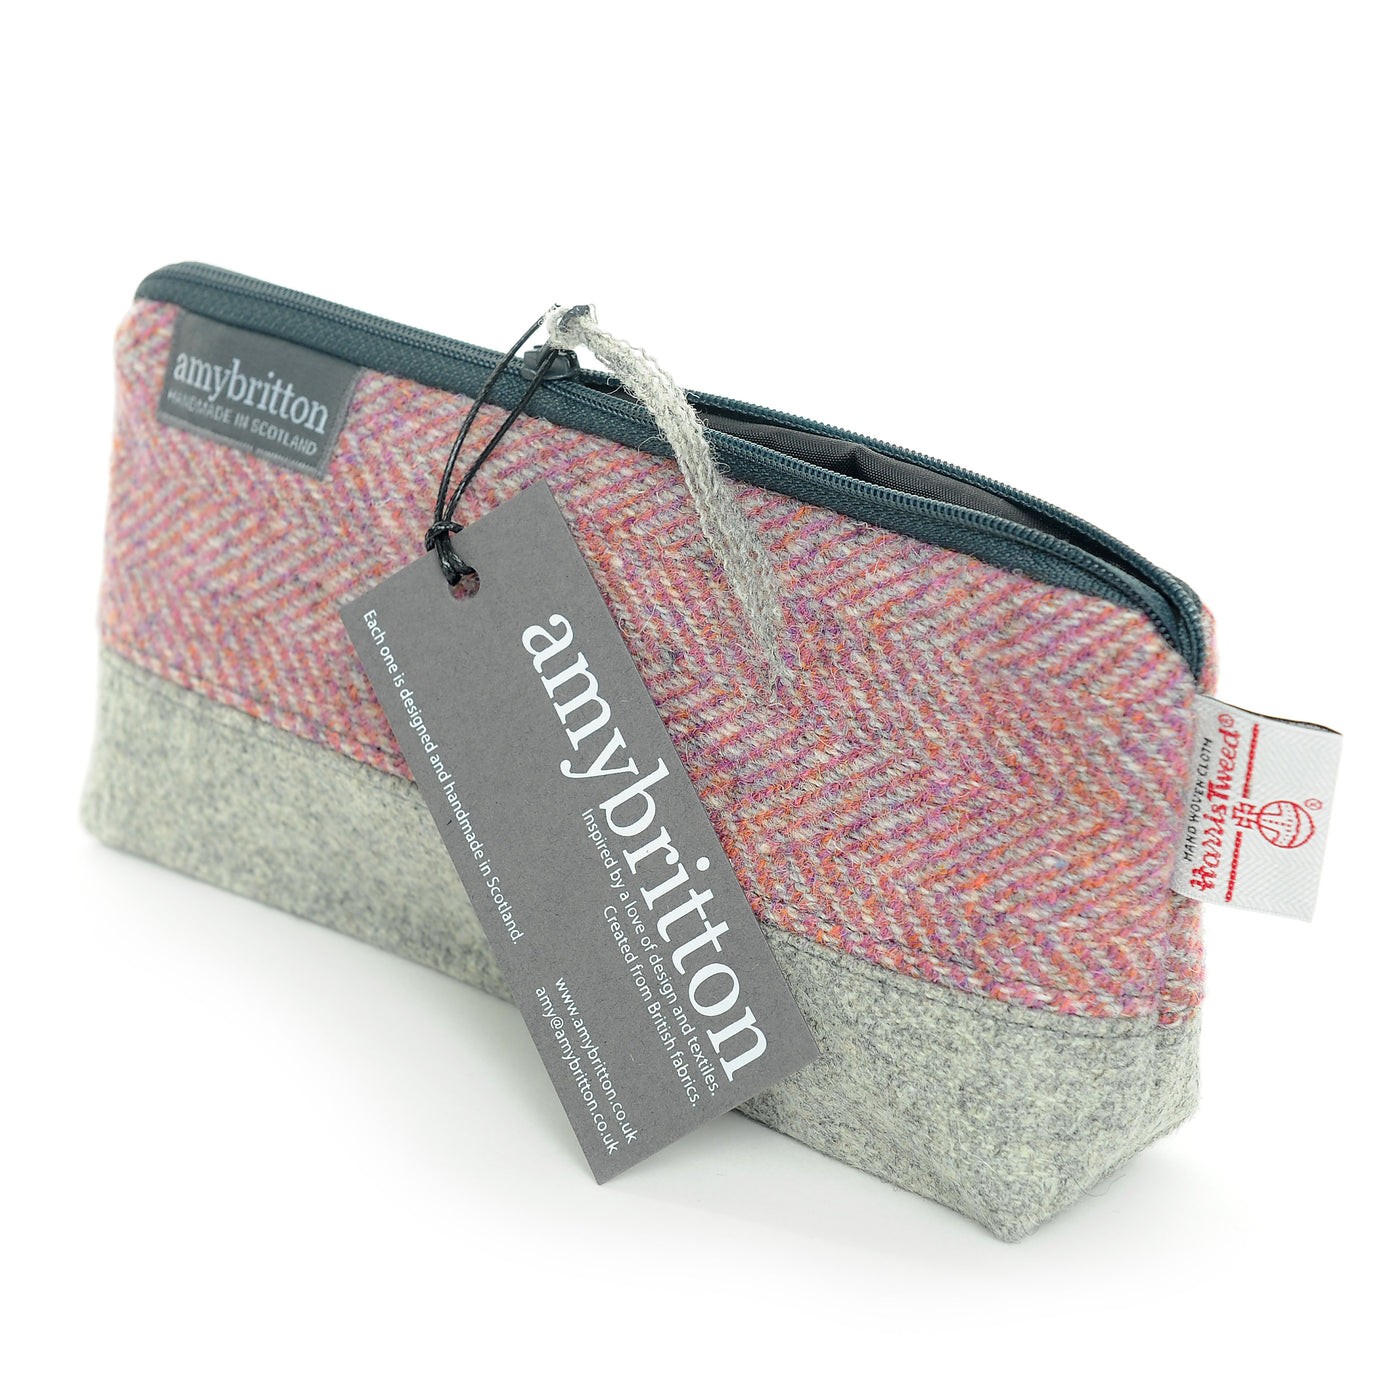 Landscape Harris Tweed® Cosmetic Bag